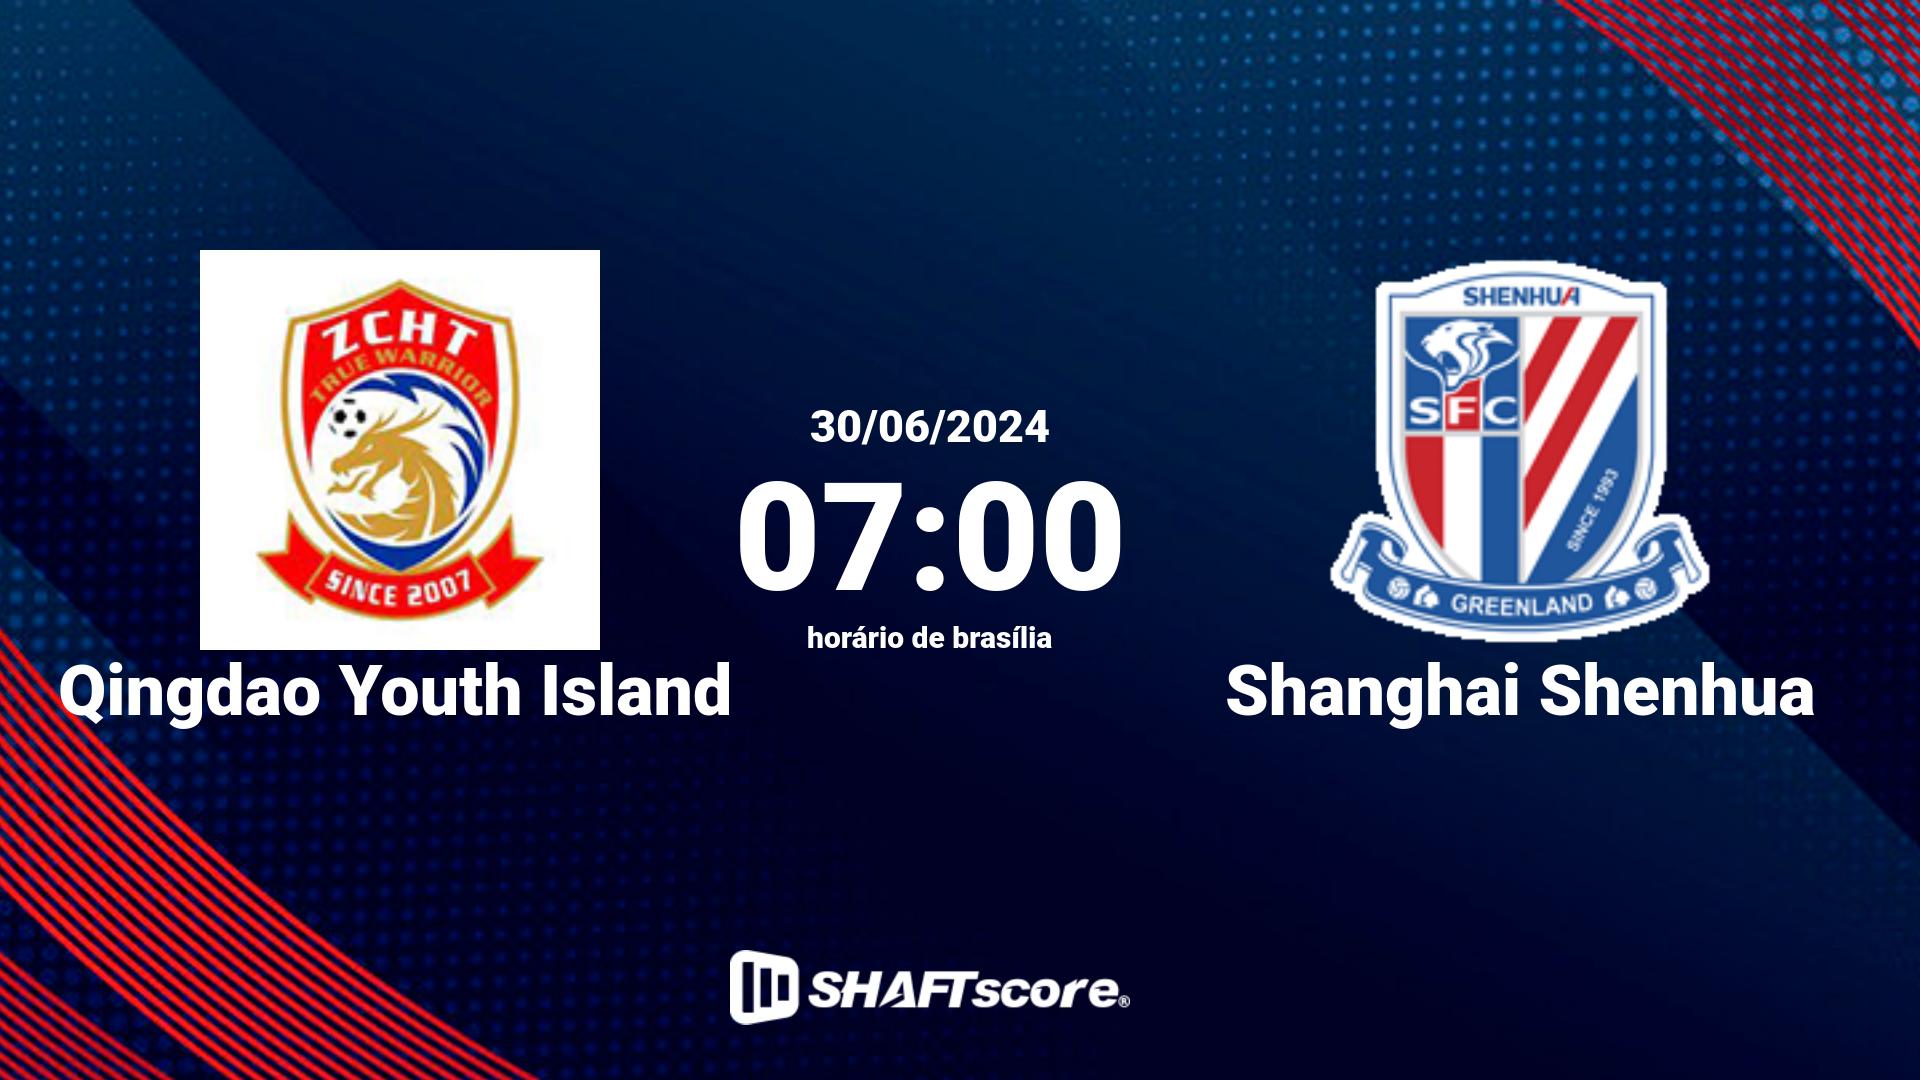 Estatísticas do jogo Qingdao Youth Island vs Shanghai Shenhua 30.06 07:00